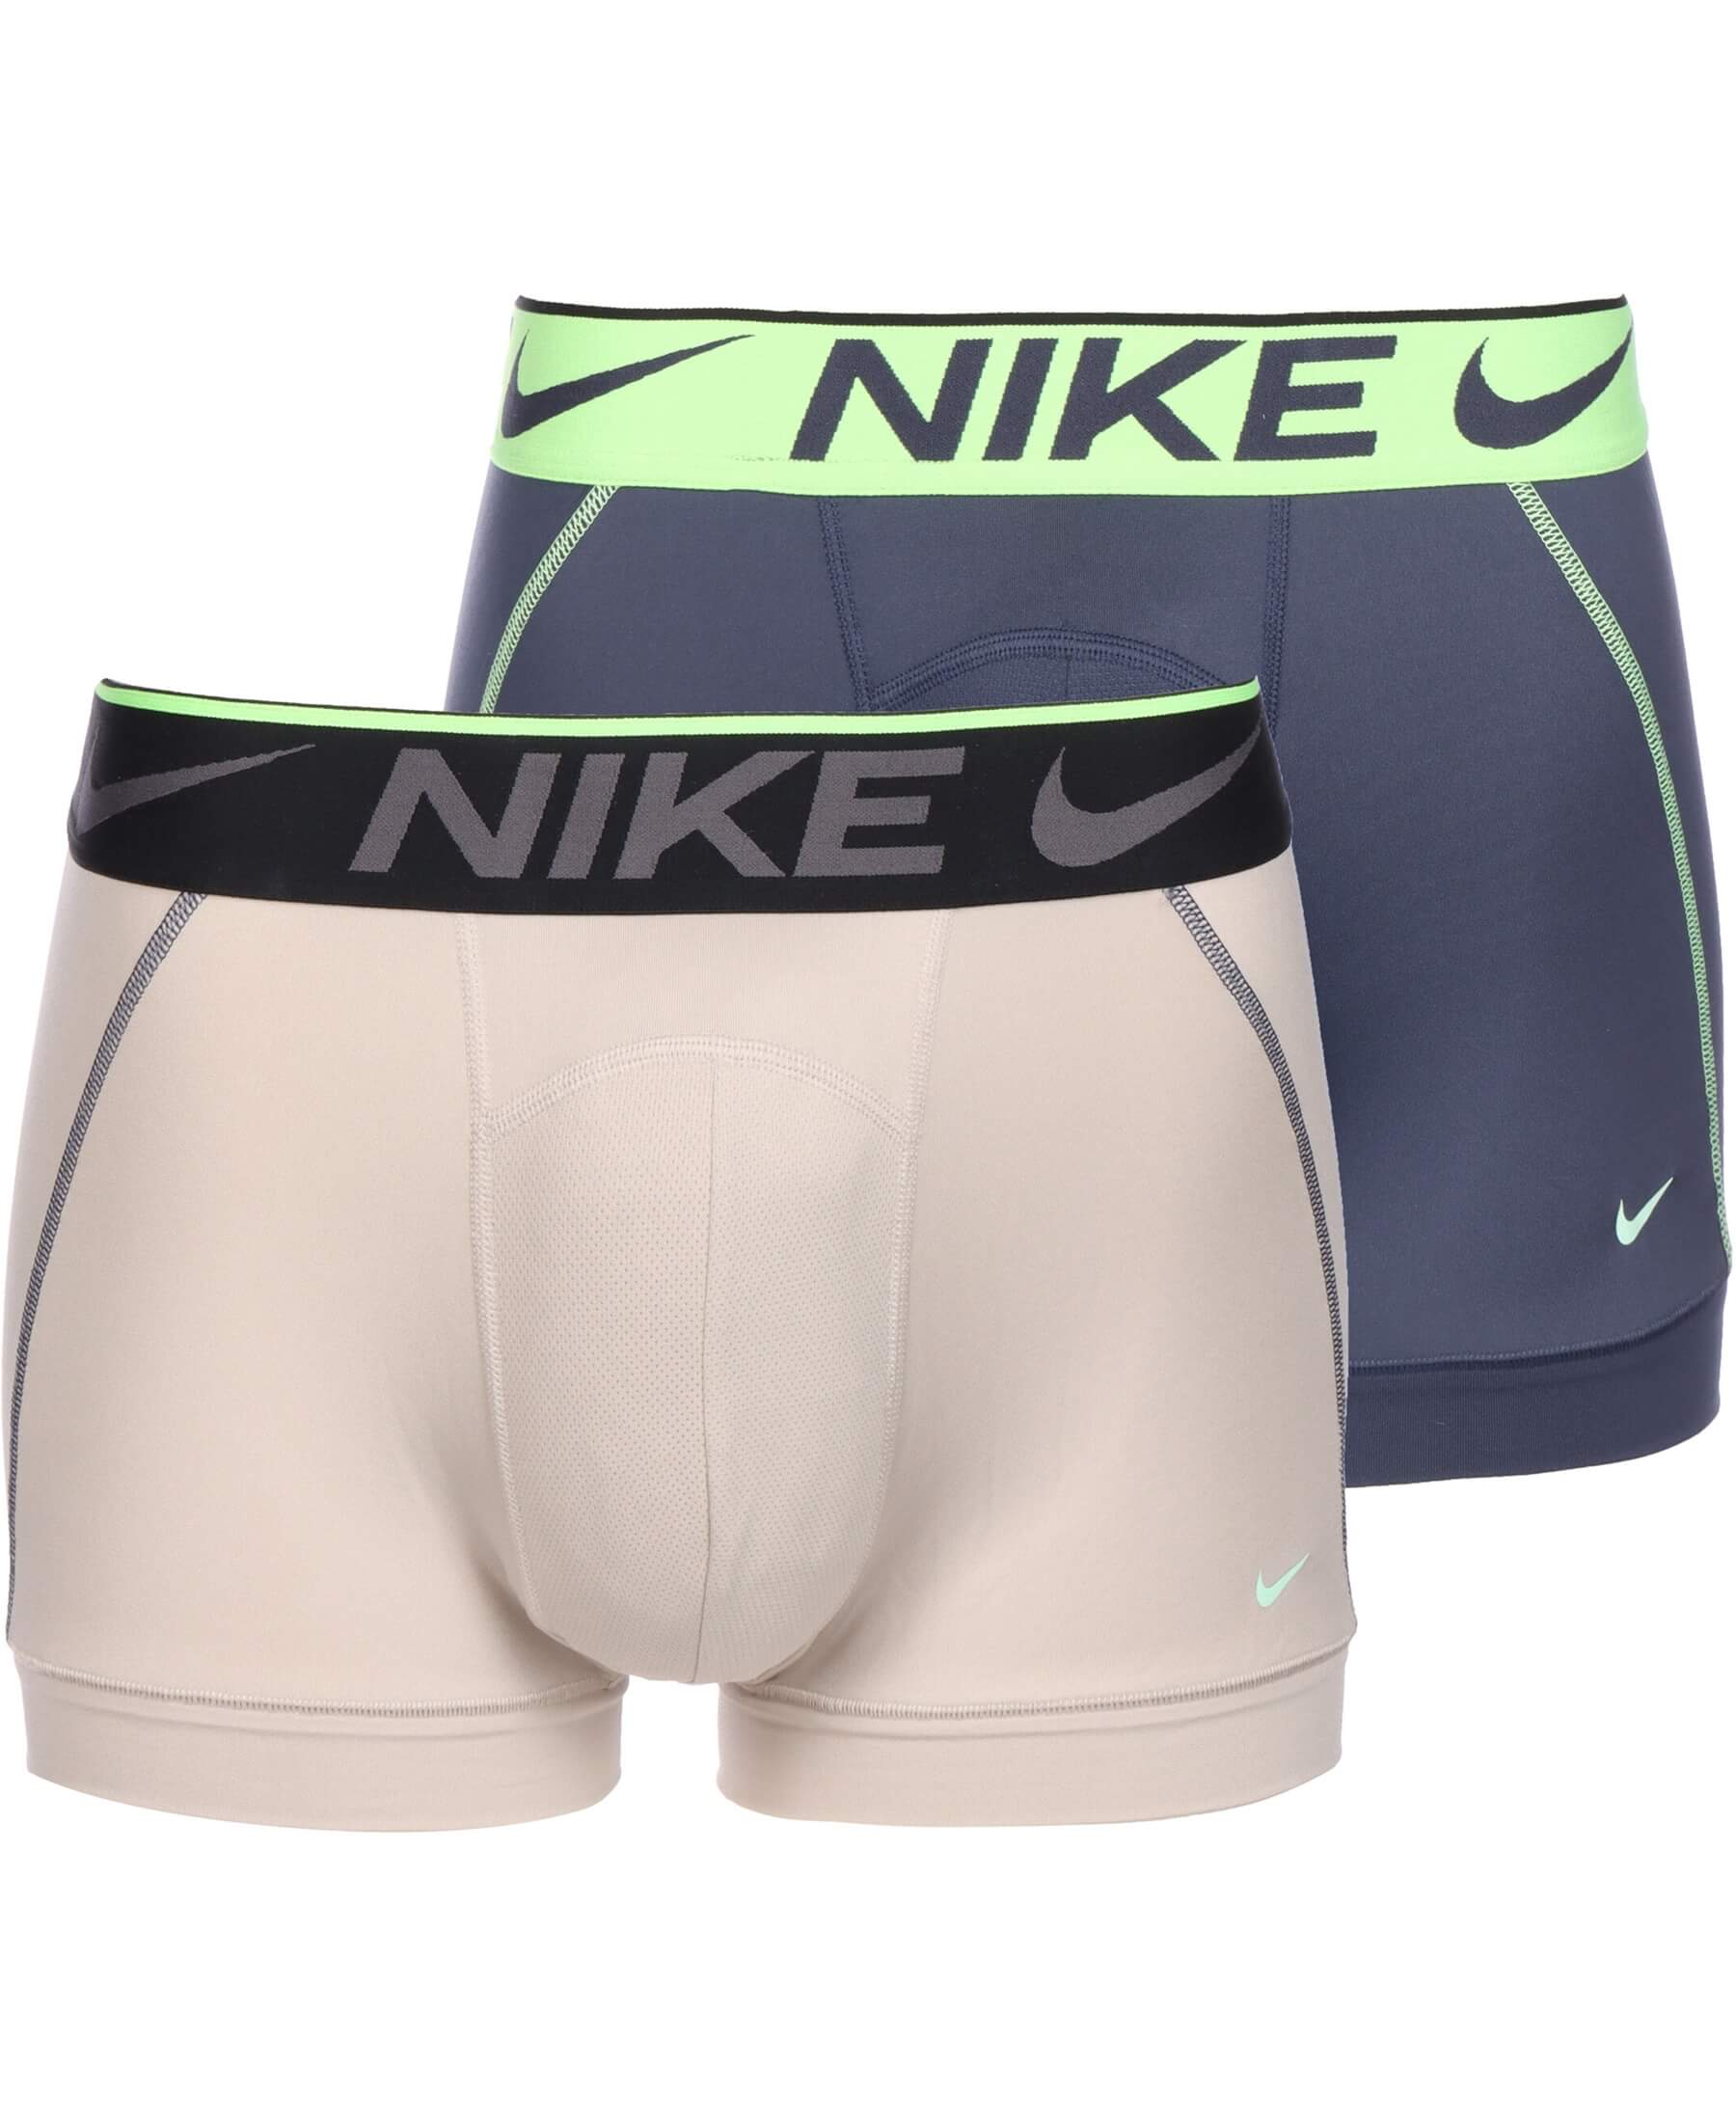 Entdecke die bequemen Nike Breathe Micro Boxershorts im 2er-Set (KE1019-TX1) für Sport und Freizeit. Hochwertiges Material, optimale Passform und hoher Tragekomfort. Erhältlich bei SHOP4TEAMSPORT. Jetzt bestellen!